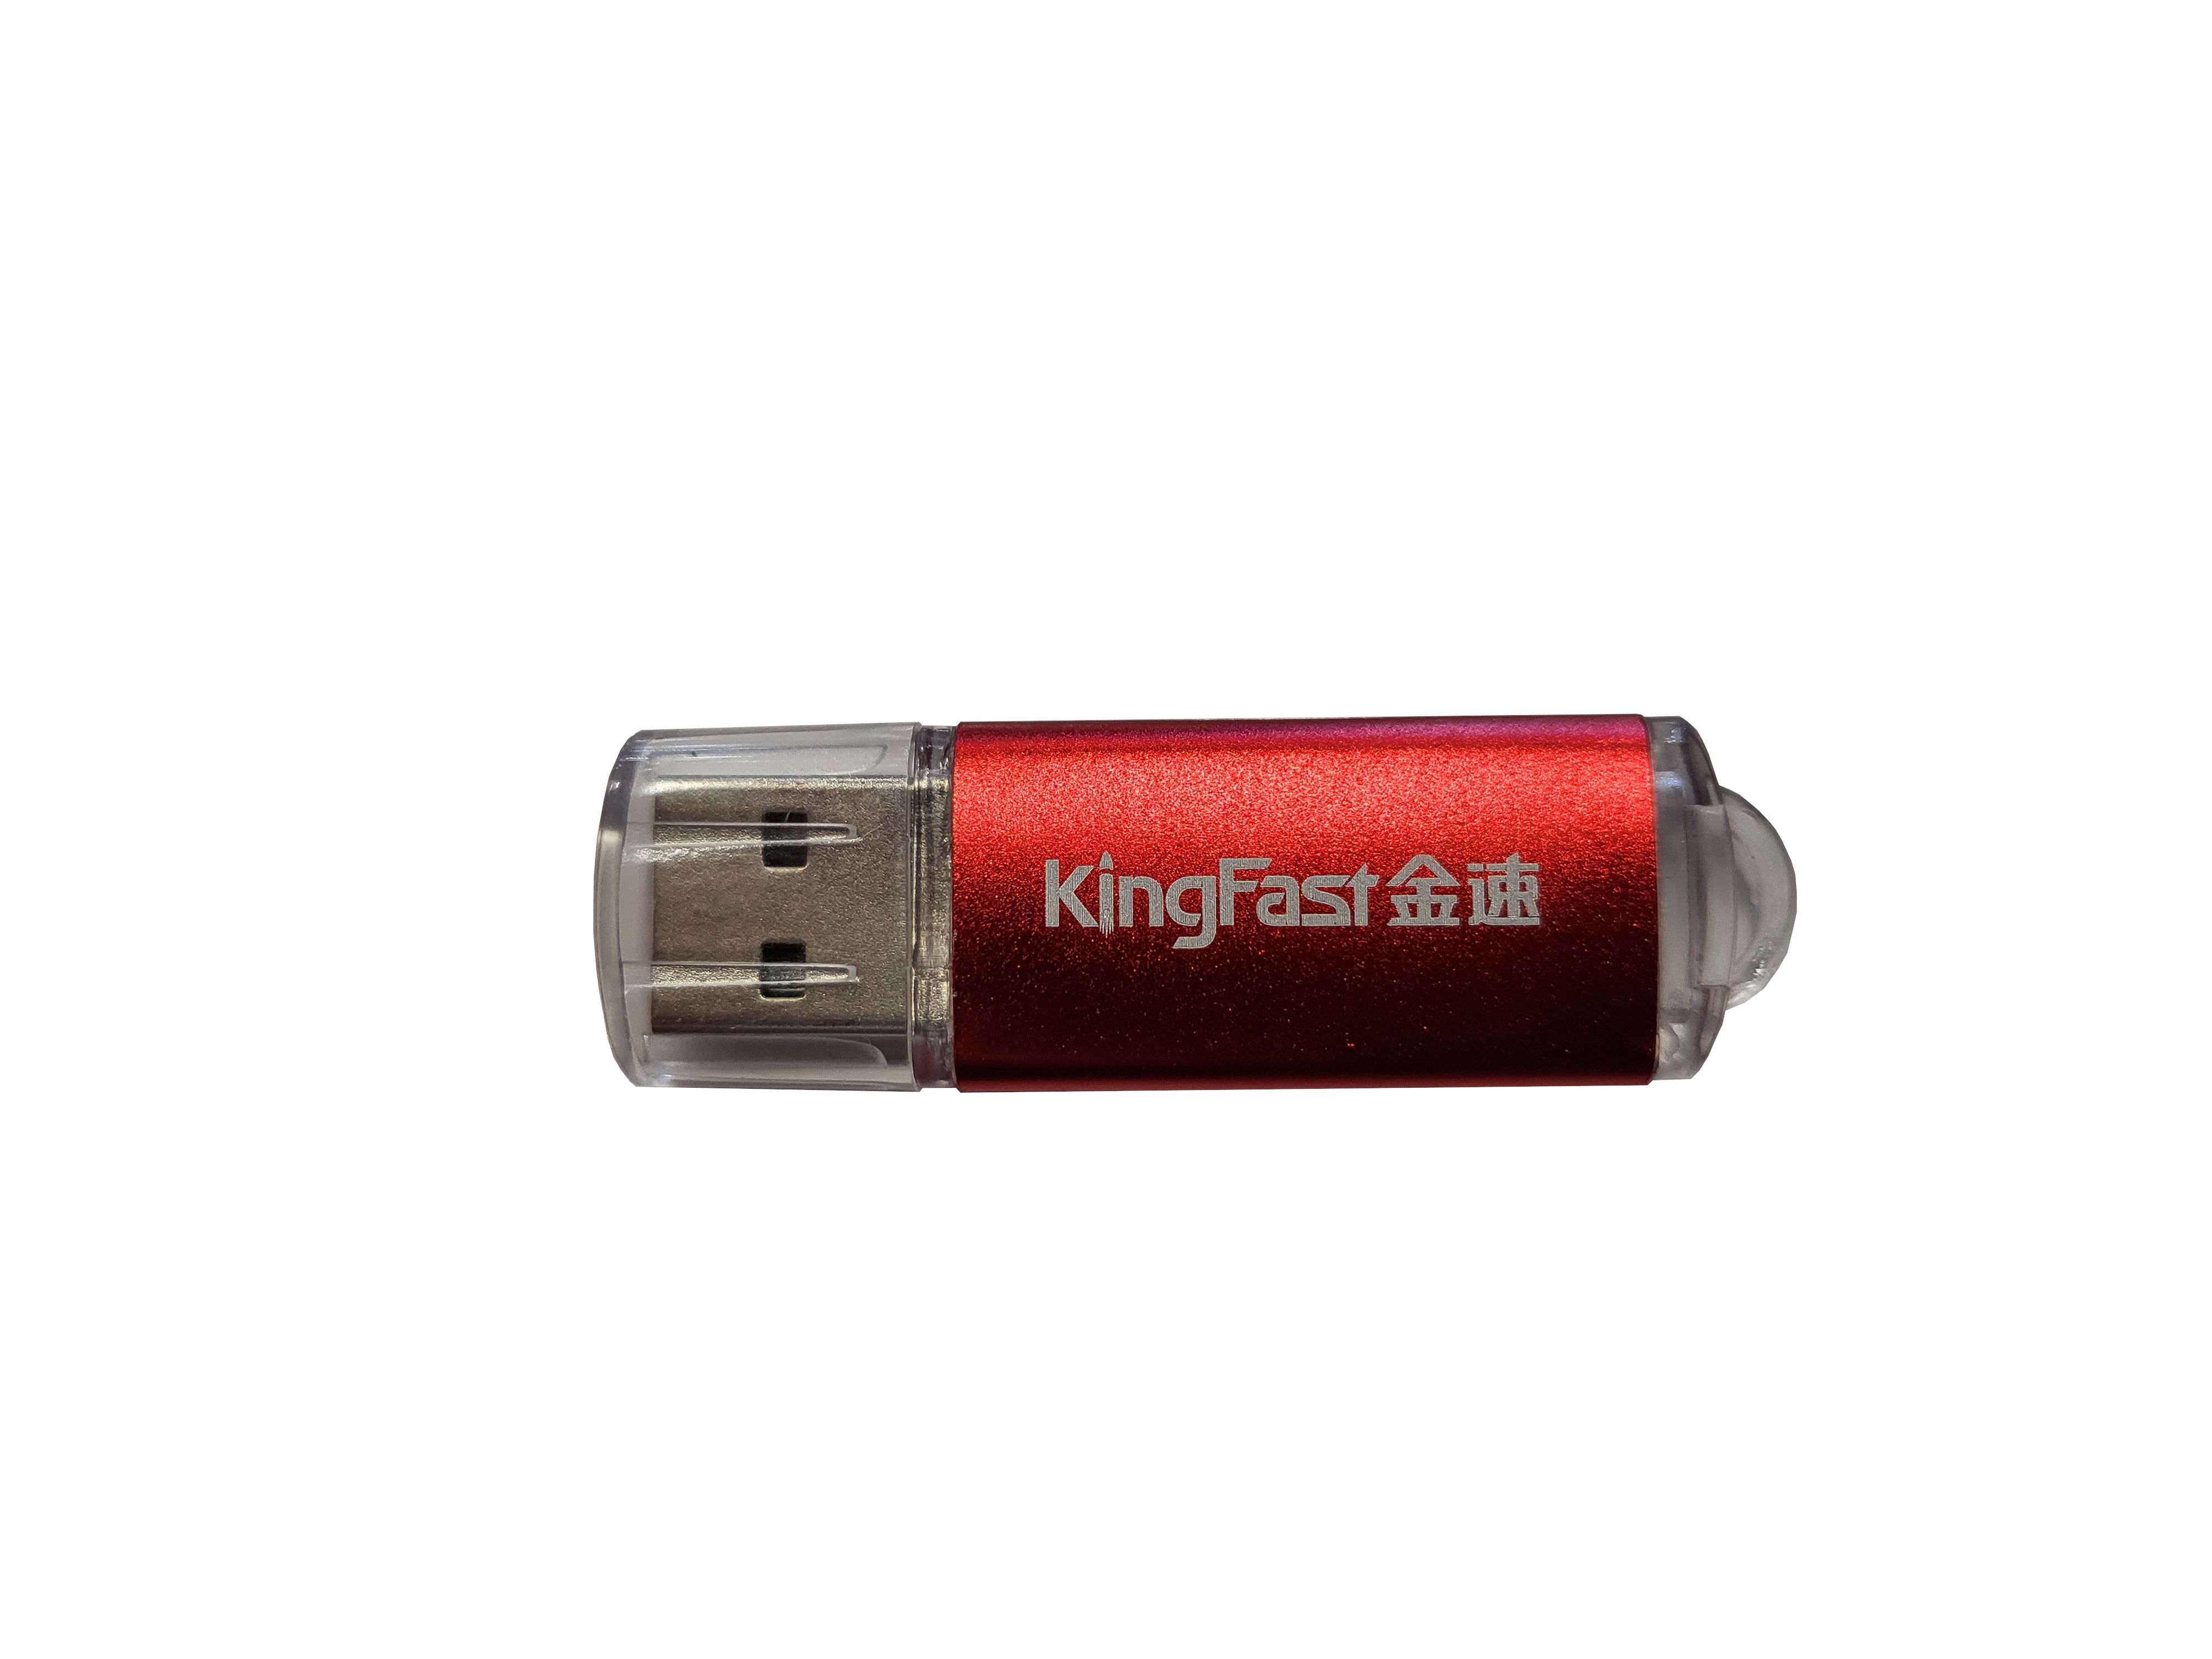 Kingfast Kingfast USB 3.0 flash Drive 32GB - New